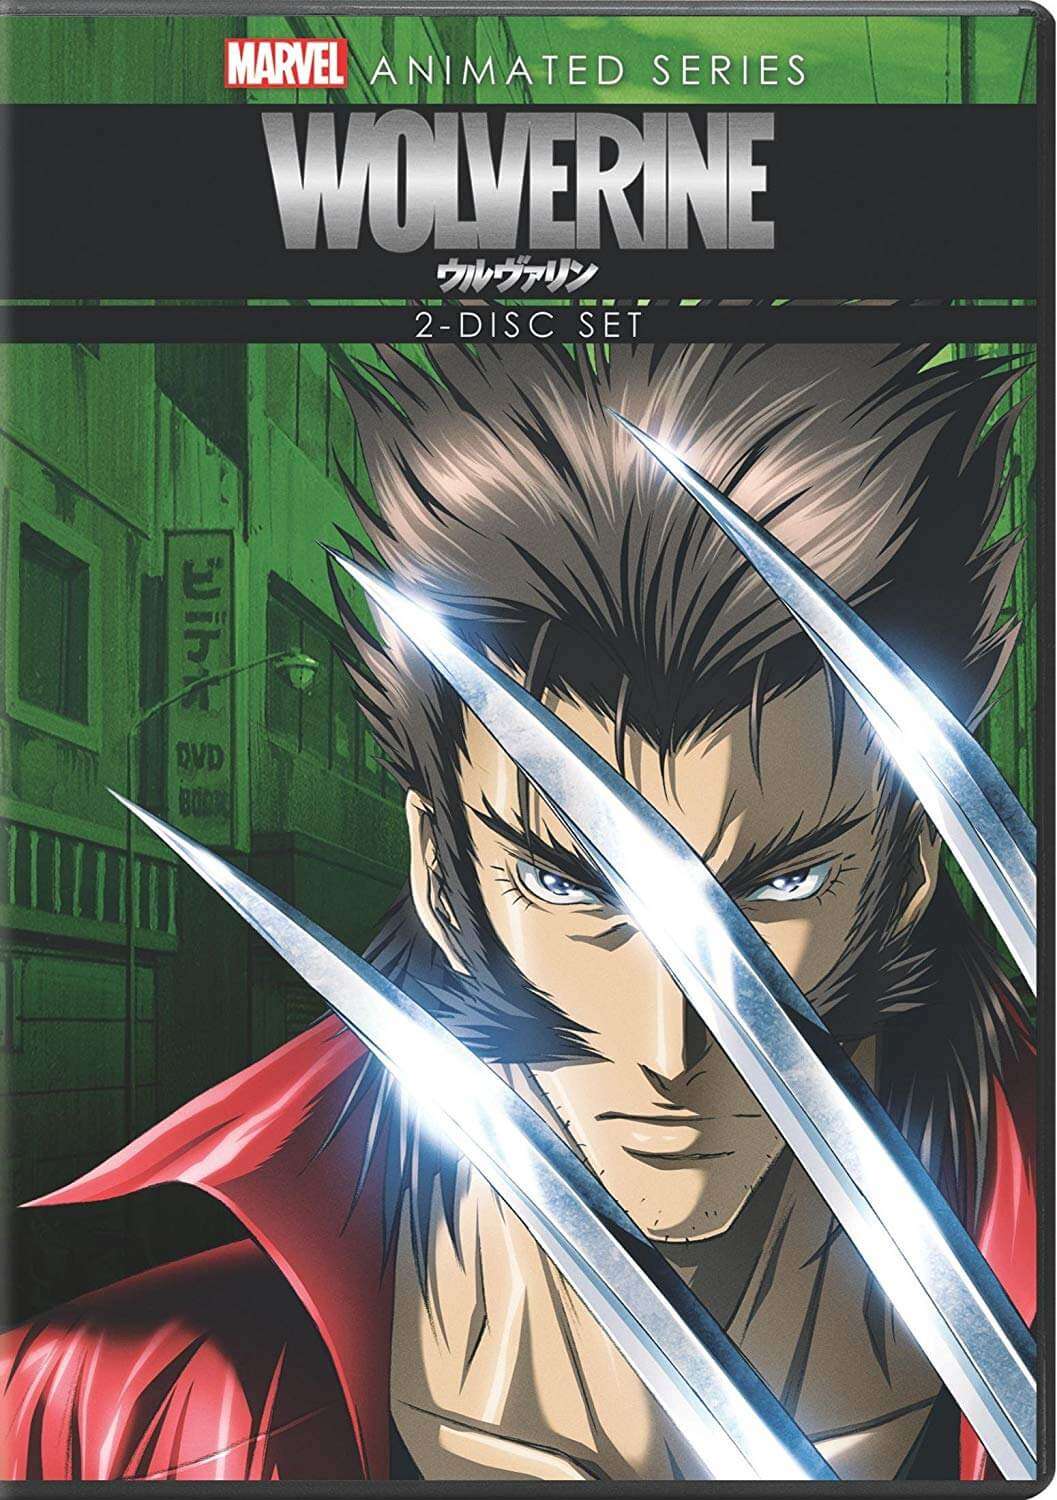 DVDs Blu-rays Anime Julho 2012 - Wolverine Marvel Animated Series